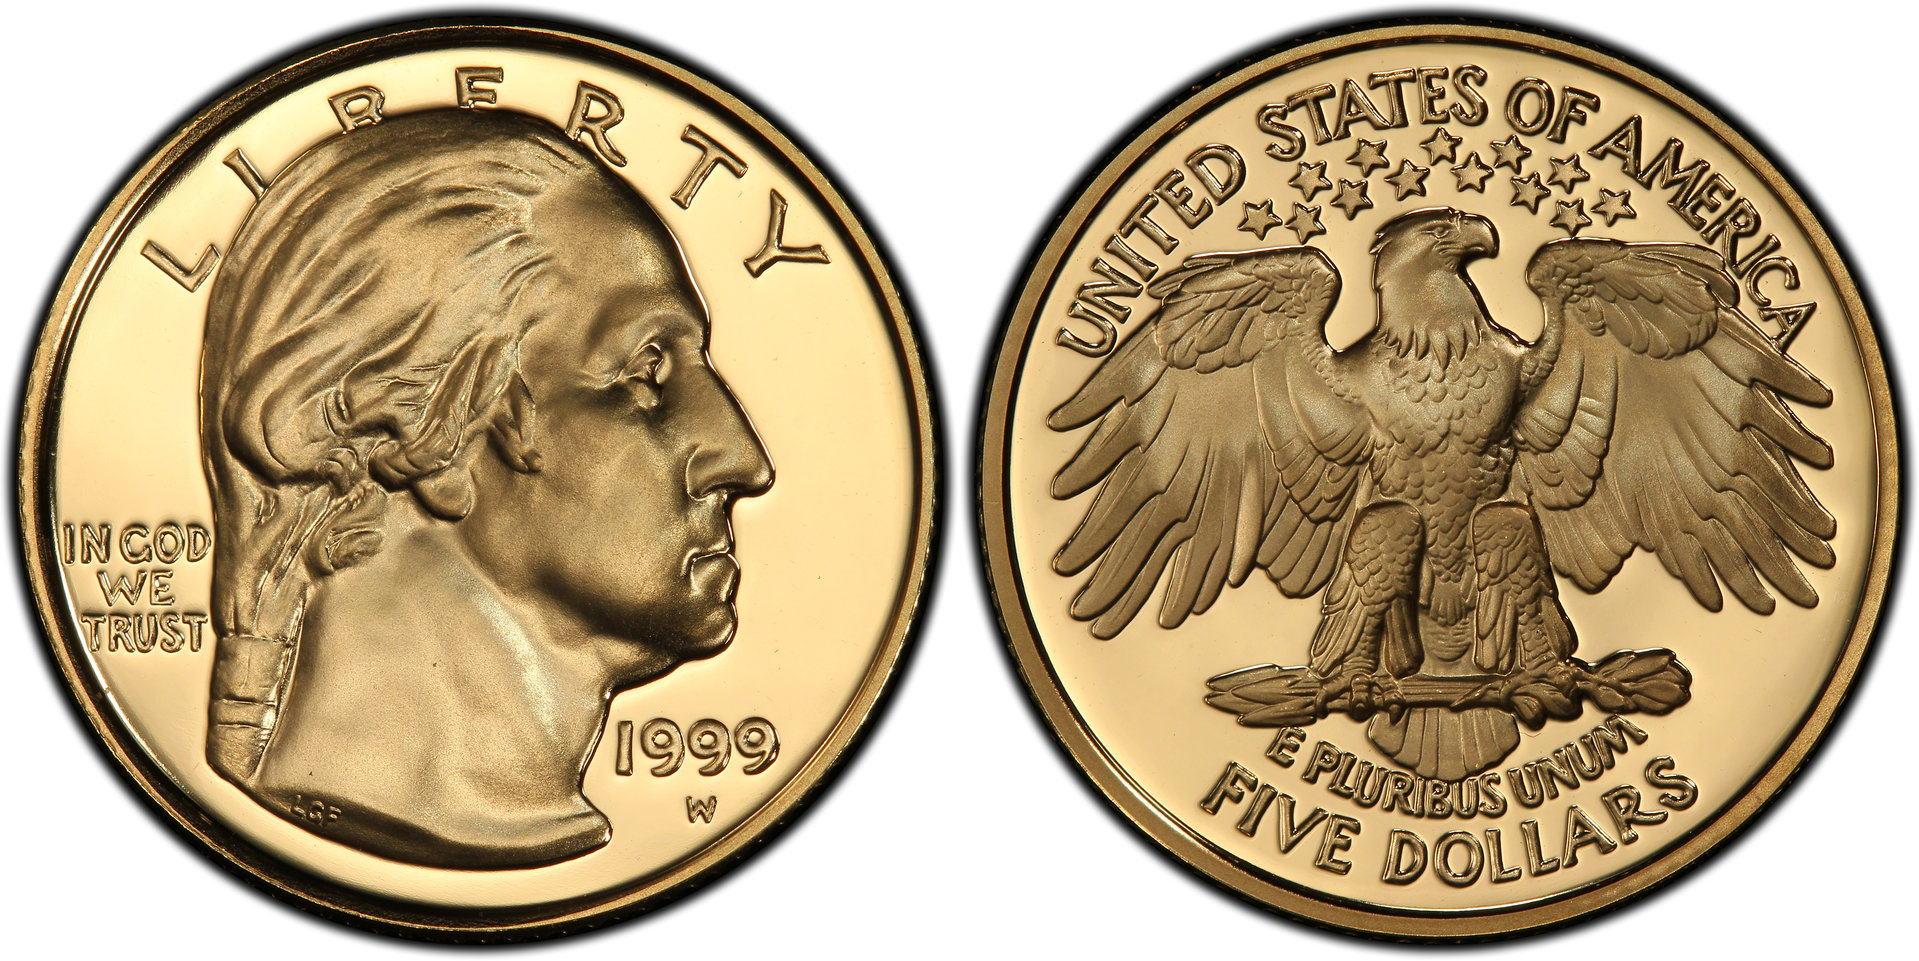 1999 Washington $5 Gold Coin.jpg